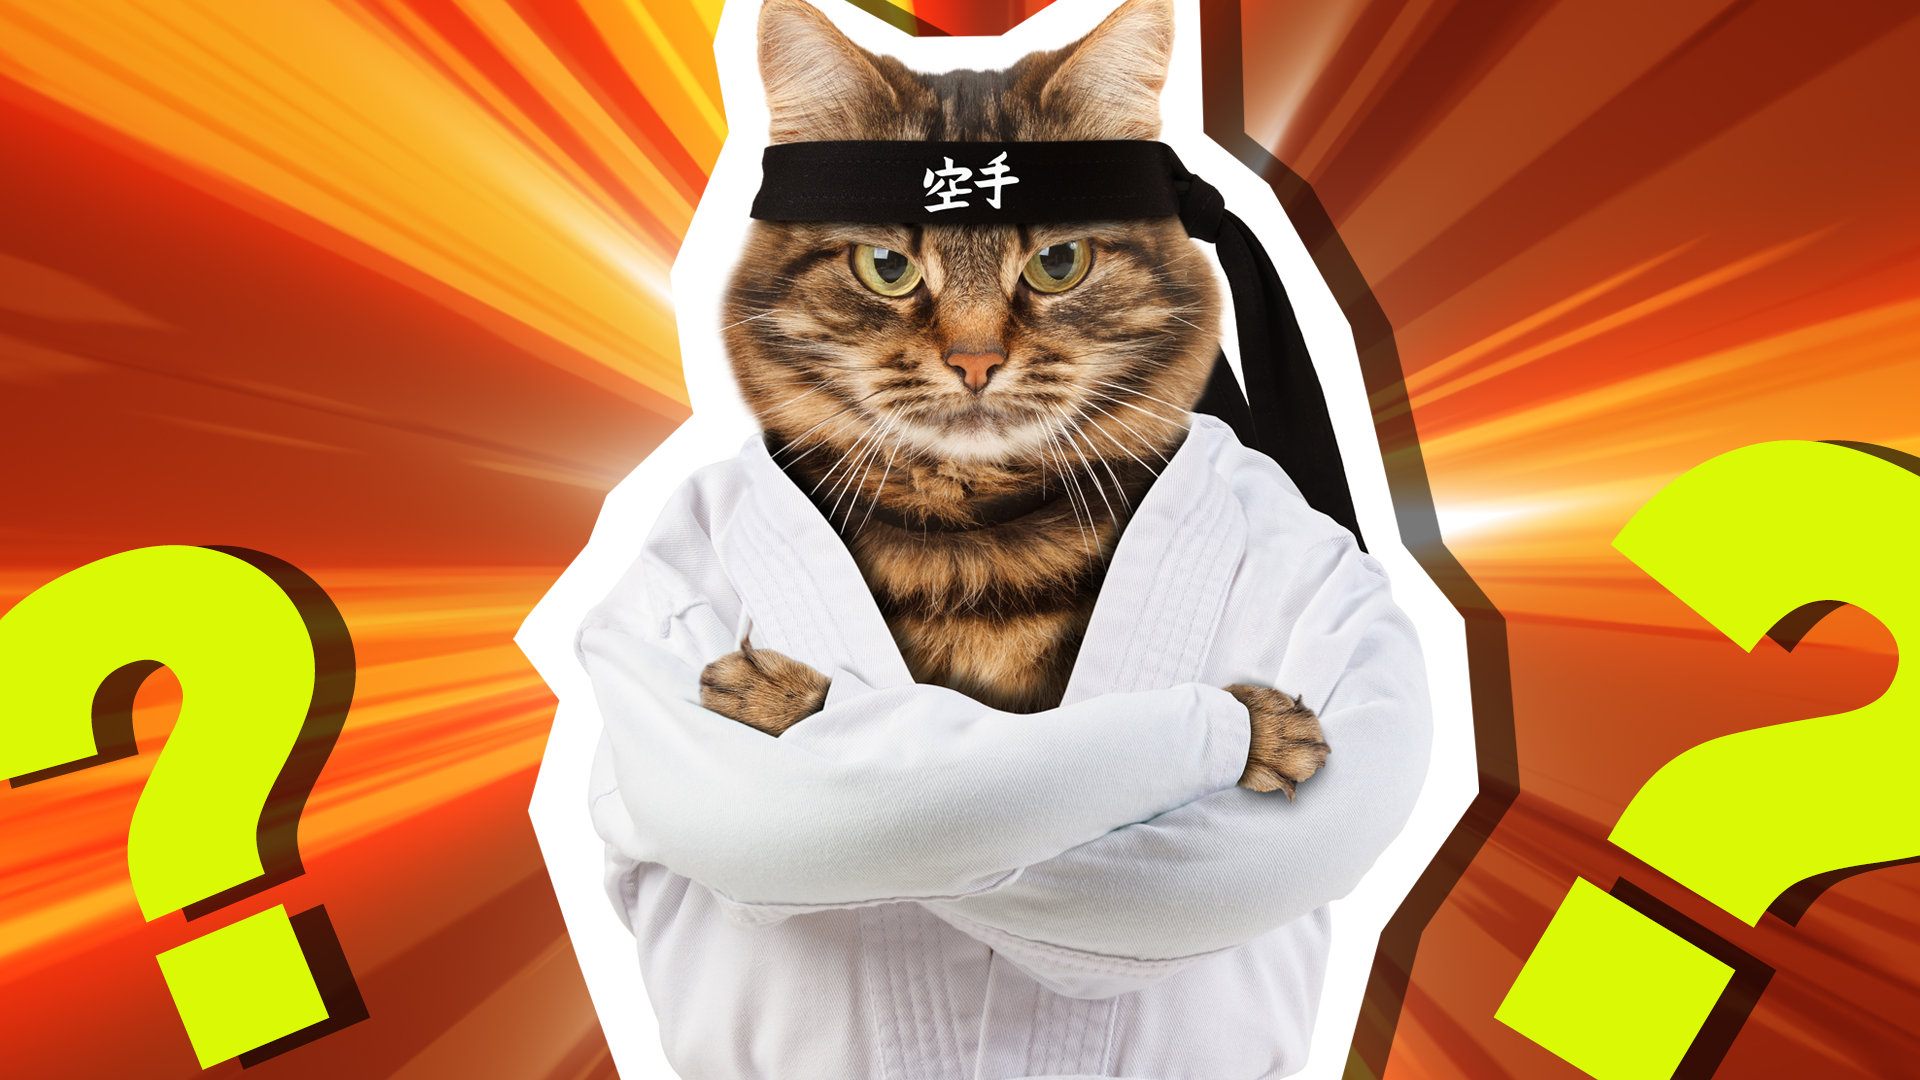 Karate Cat